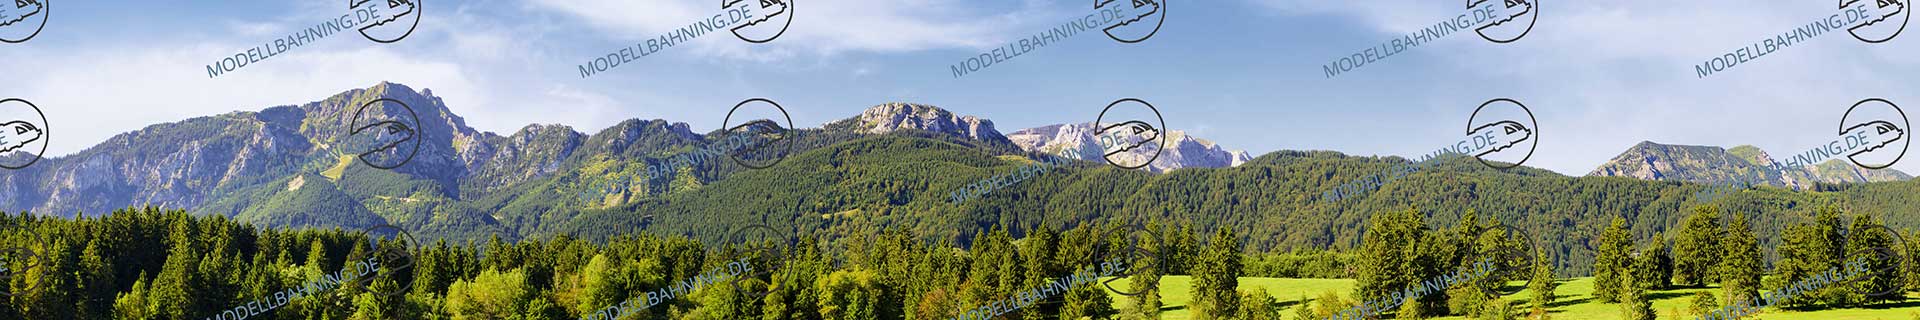 Bayern mit Alpenbergen Teil 4 – Modellbahn Hintergrund 300 cm 1